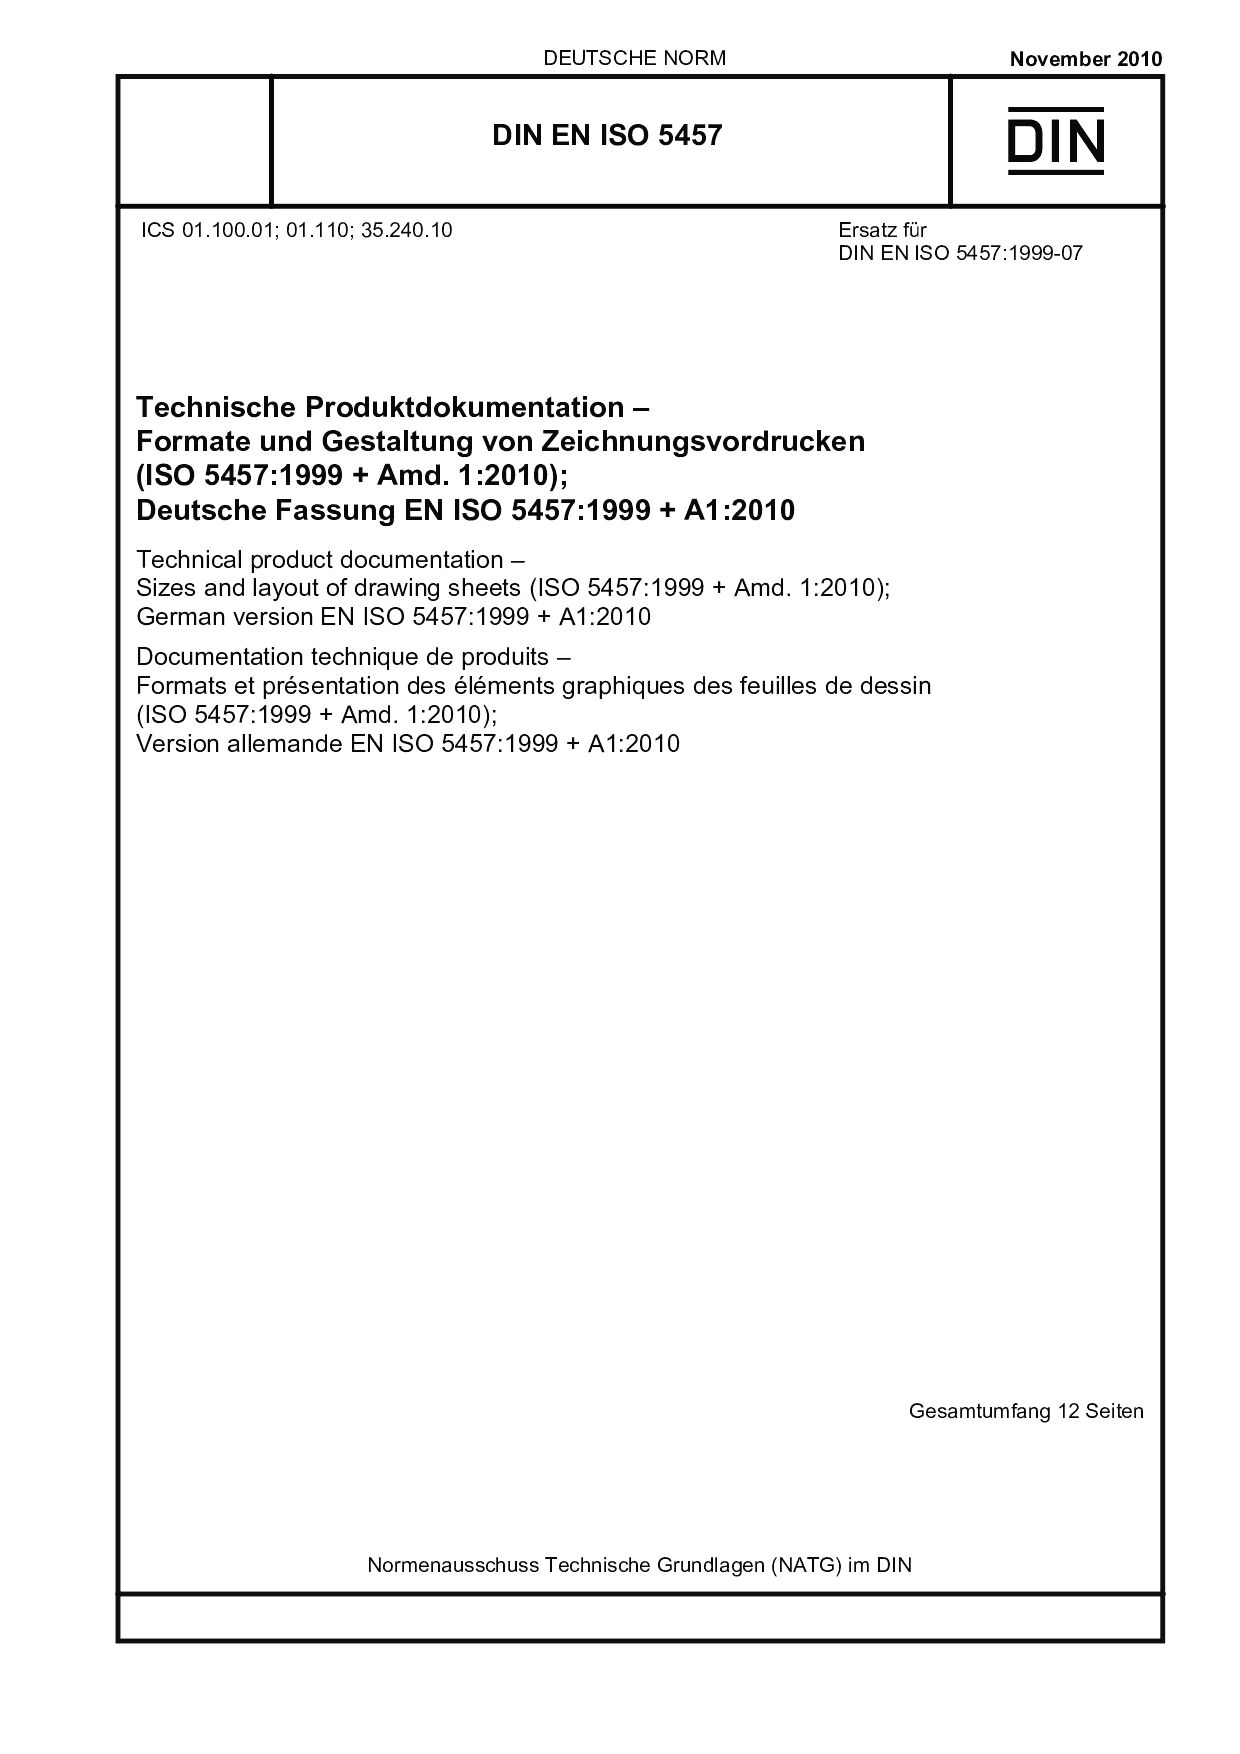 DIN EN ISO 5457:2010封面图